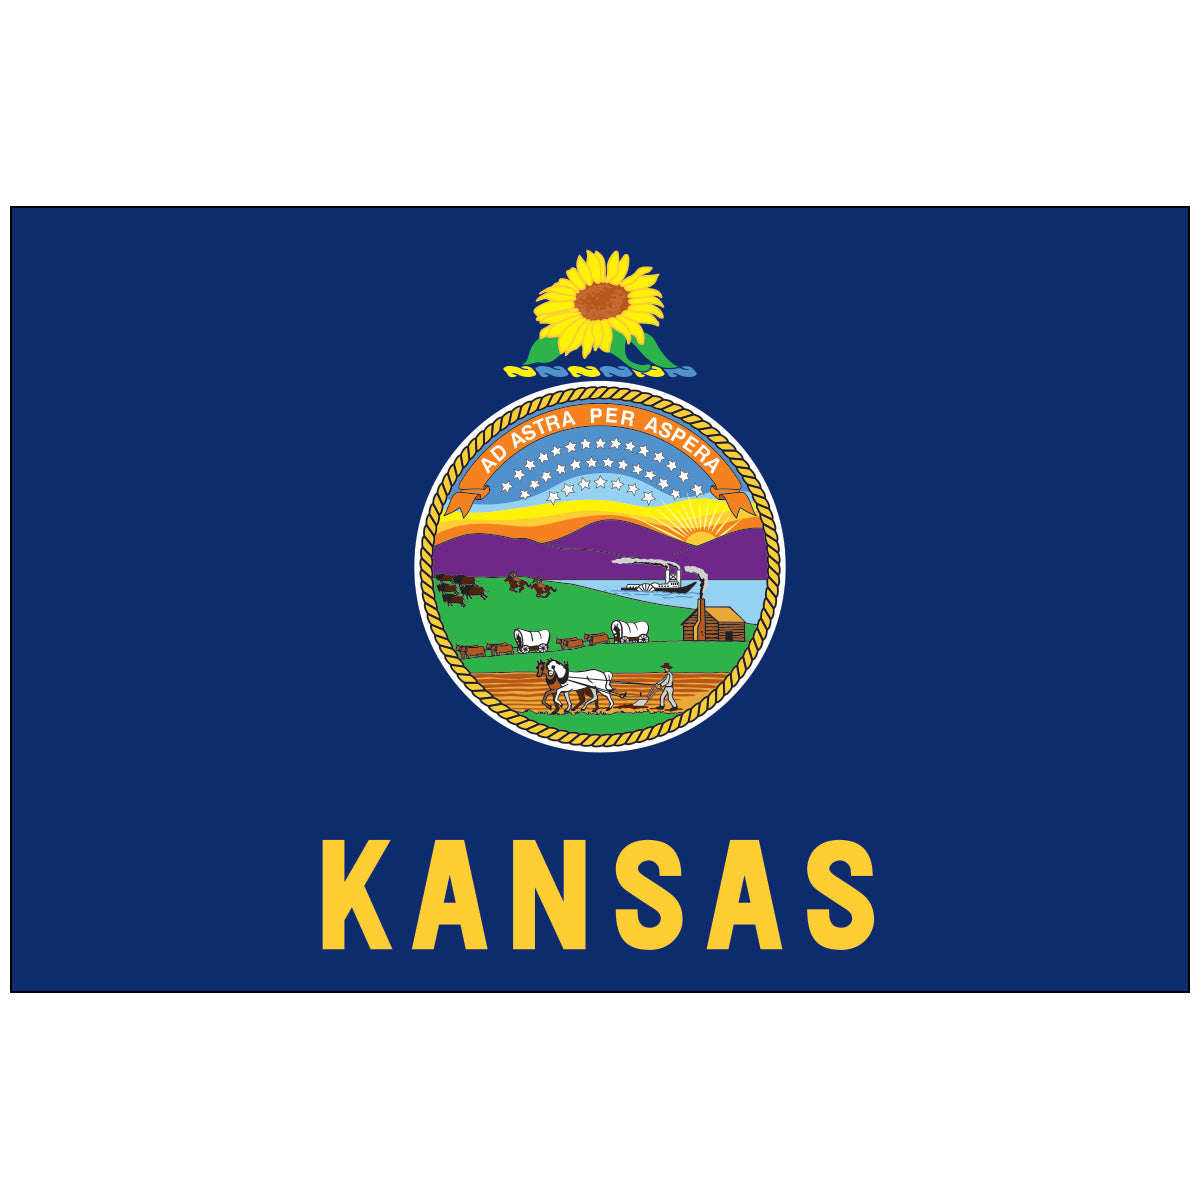 State of Kansas